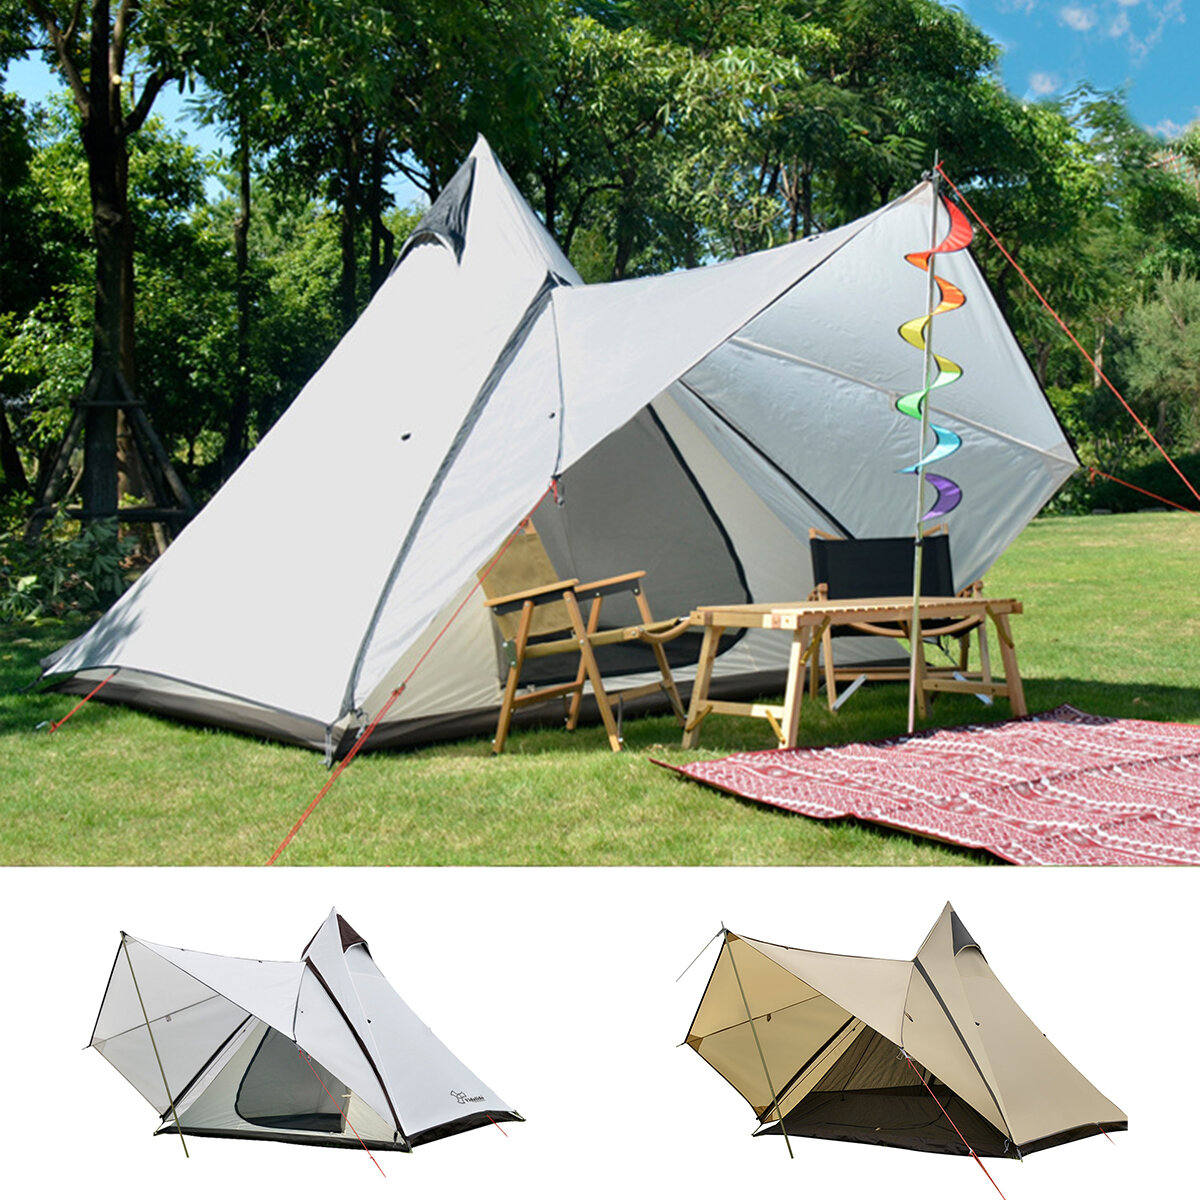 Barracas ao ar livre para camping barraca de acampamento para 4 pessoas à prova d 'água família tenda estilo indiano pirâmide tipi barraca de acampamento